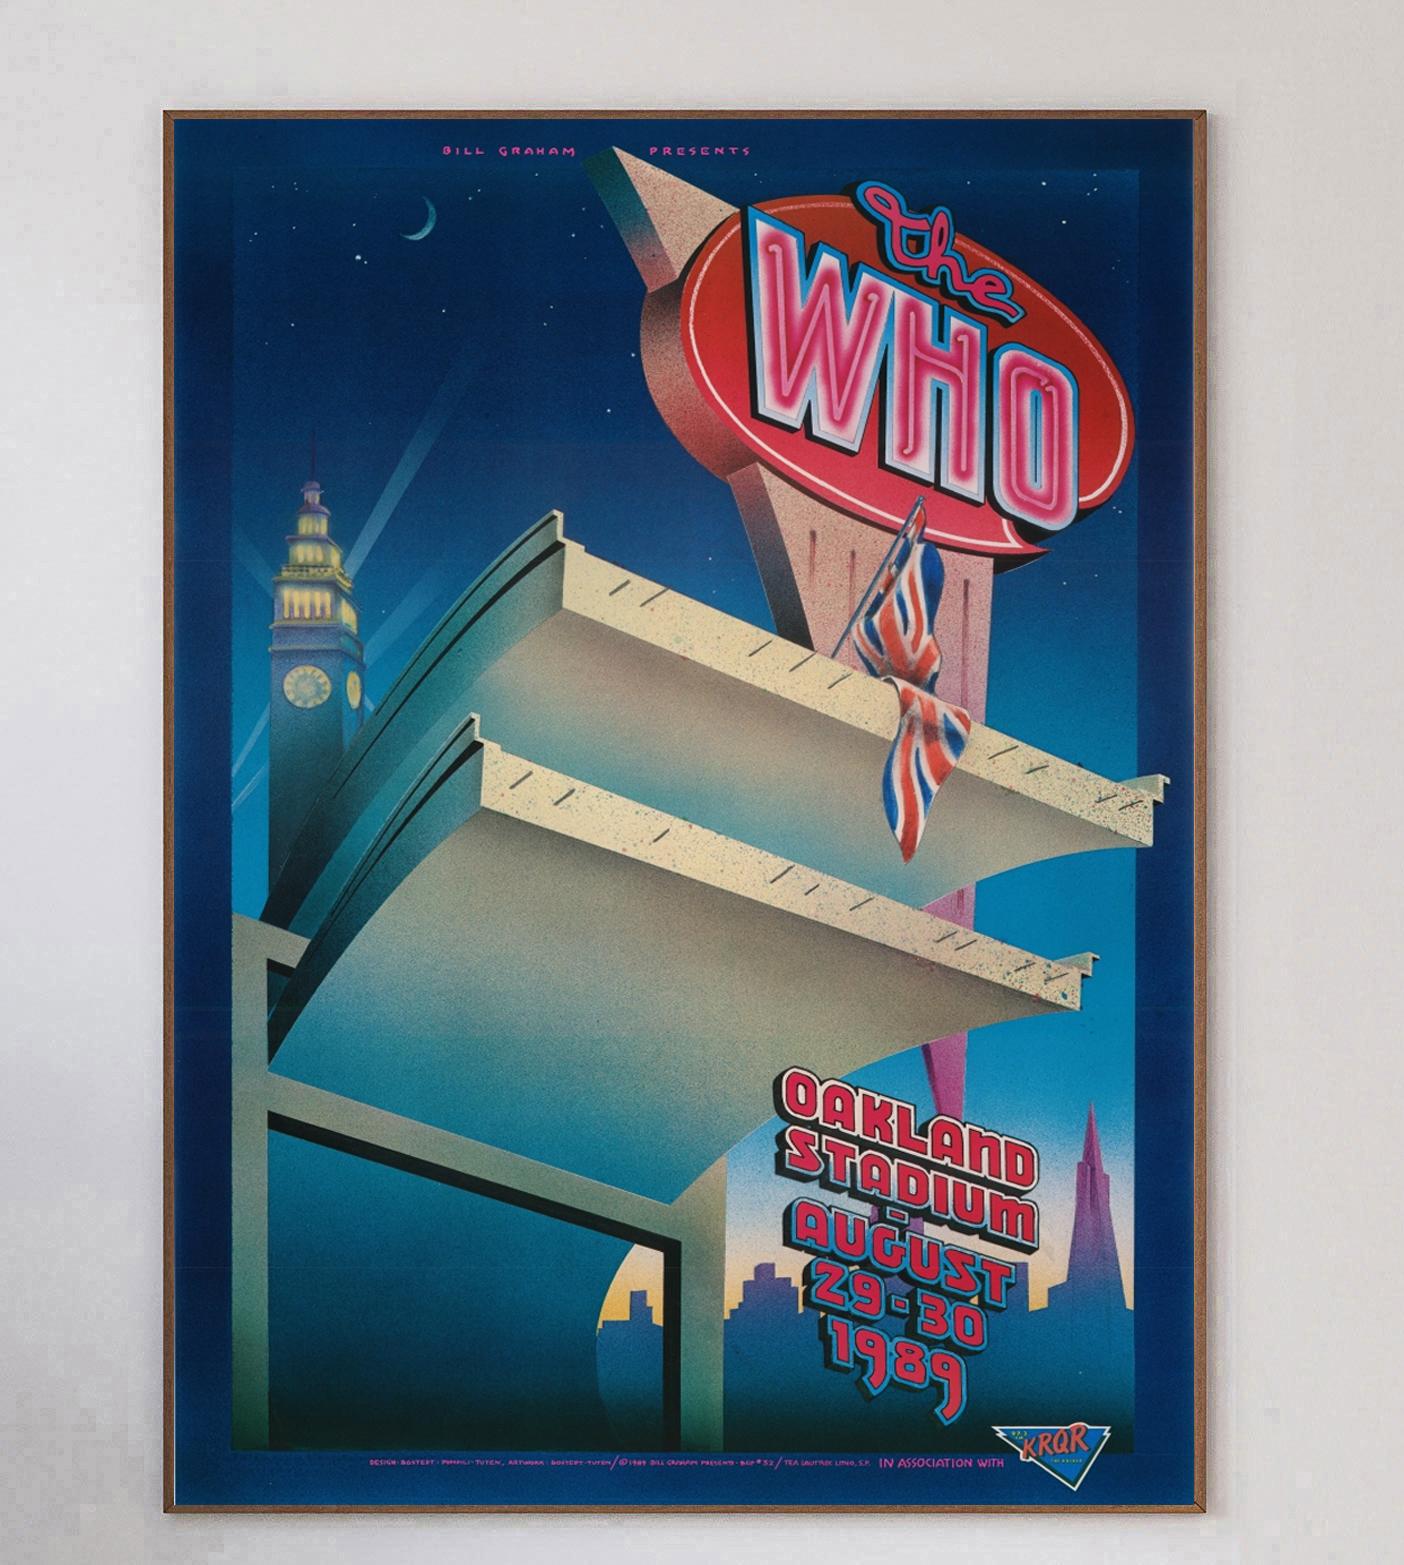 Dieses wunderschöne Plakat wurde 1989 von dem großen Konzertplakatkünstler Randy Tuten zusammen mit William Bostedt und Jerry Pompili entworfen, um ein Live-Konzert von The Who im Oakland Stadium in Kalifornien zu bewerben. Bill